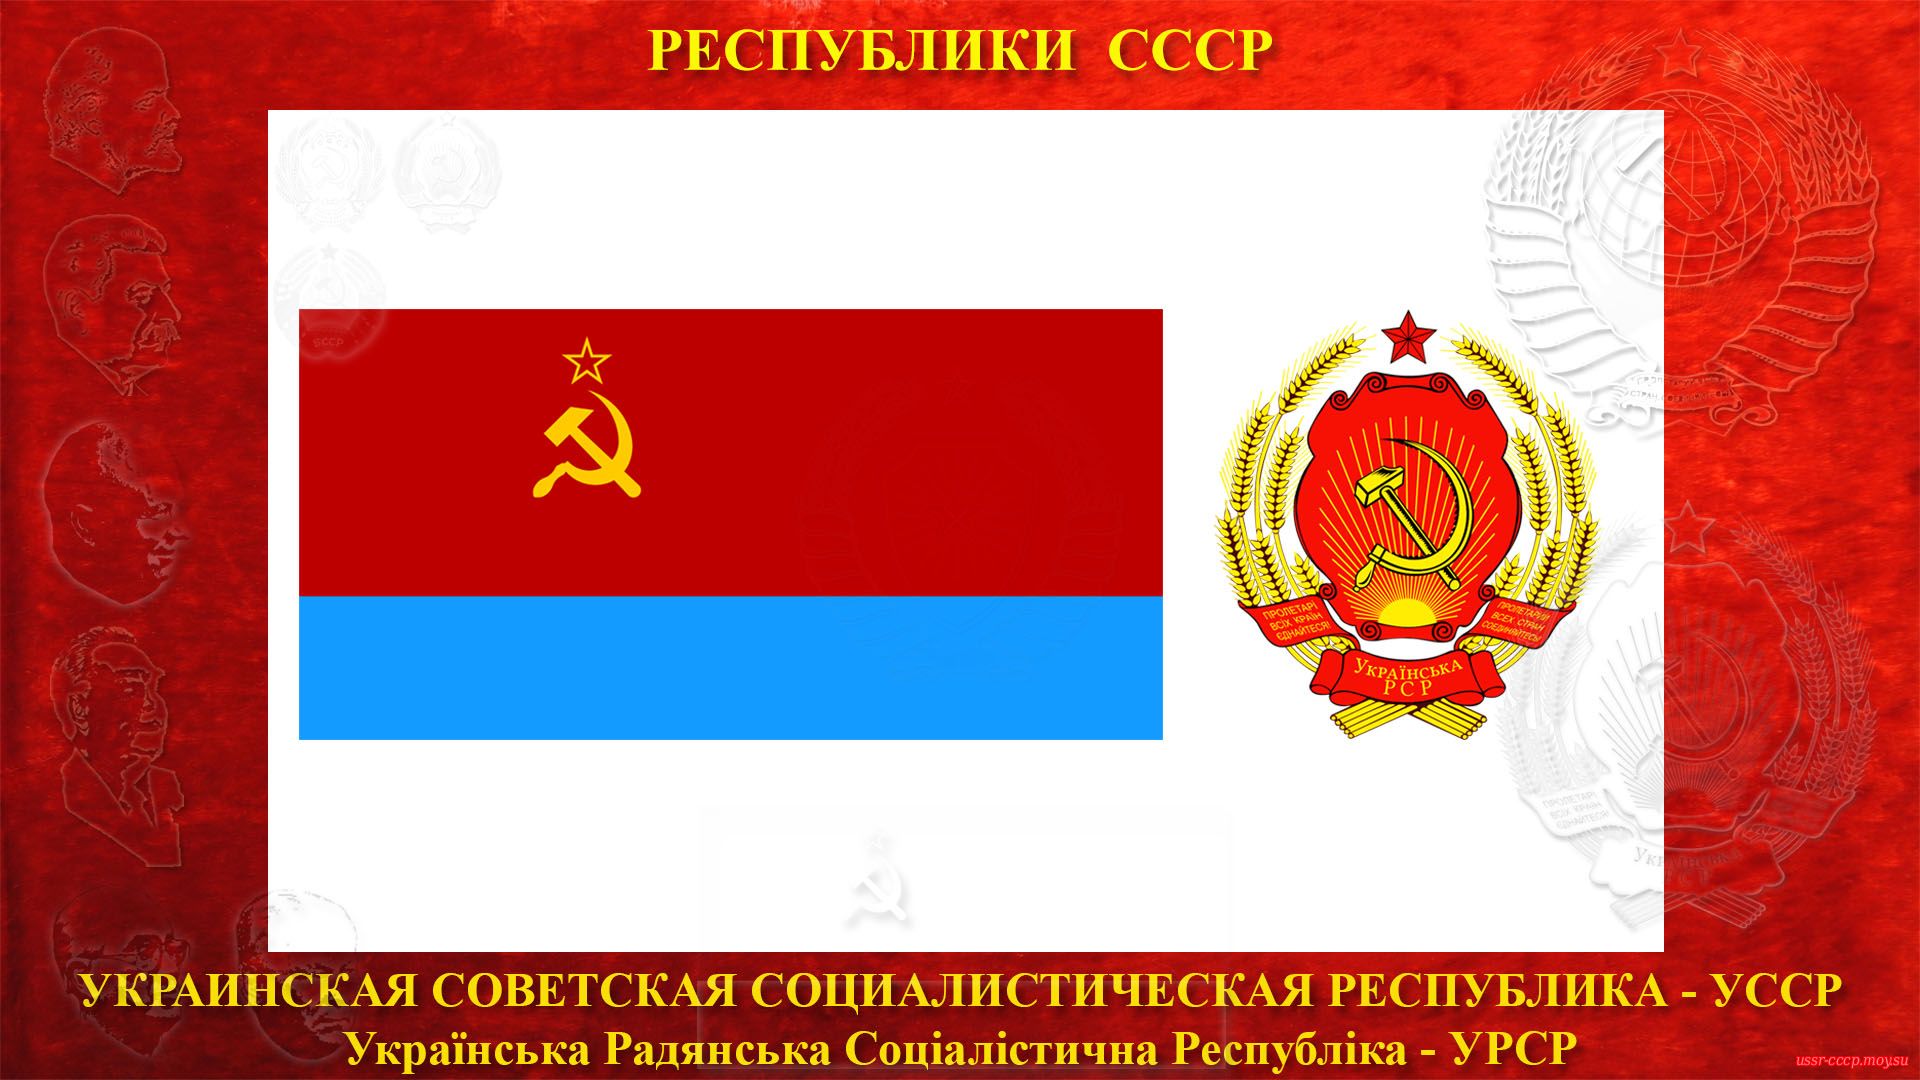 УССР — Украинская Советская Социалистическая Республика (30.12.1922 — де-юре)